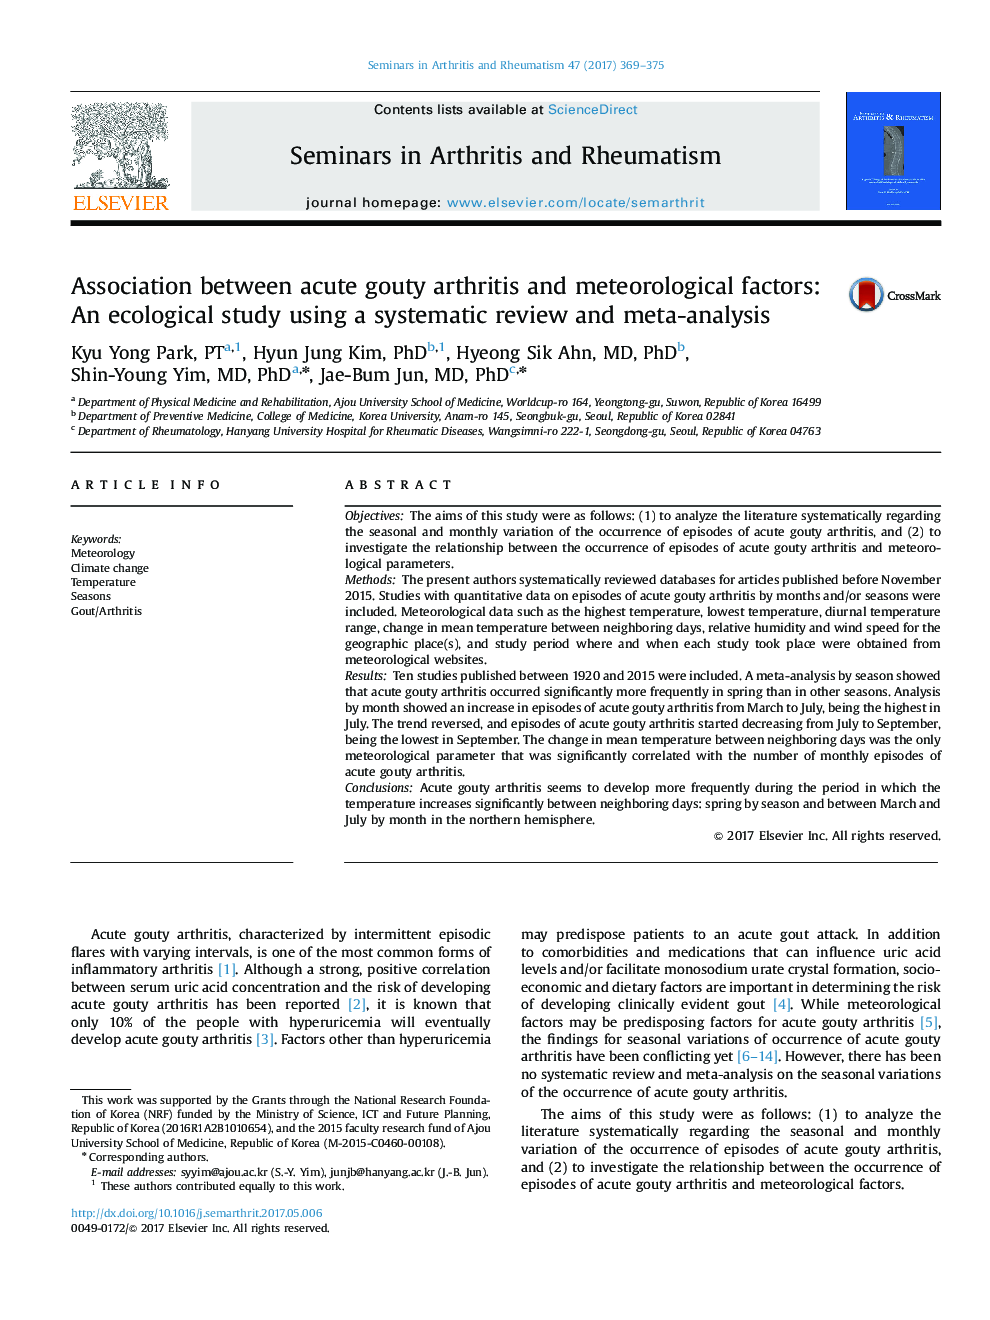 ارتباط بین آرتریت بدخیم حاد و عوامل هواشناسی: یک مطالعه اکولوژیکی با استفاده از یک بررسی منظم و متاآنالیز 